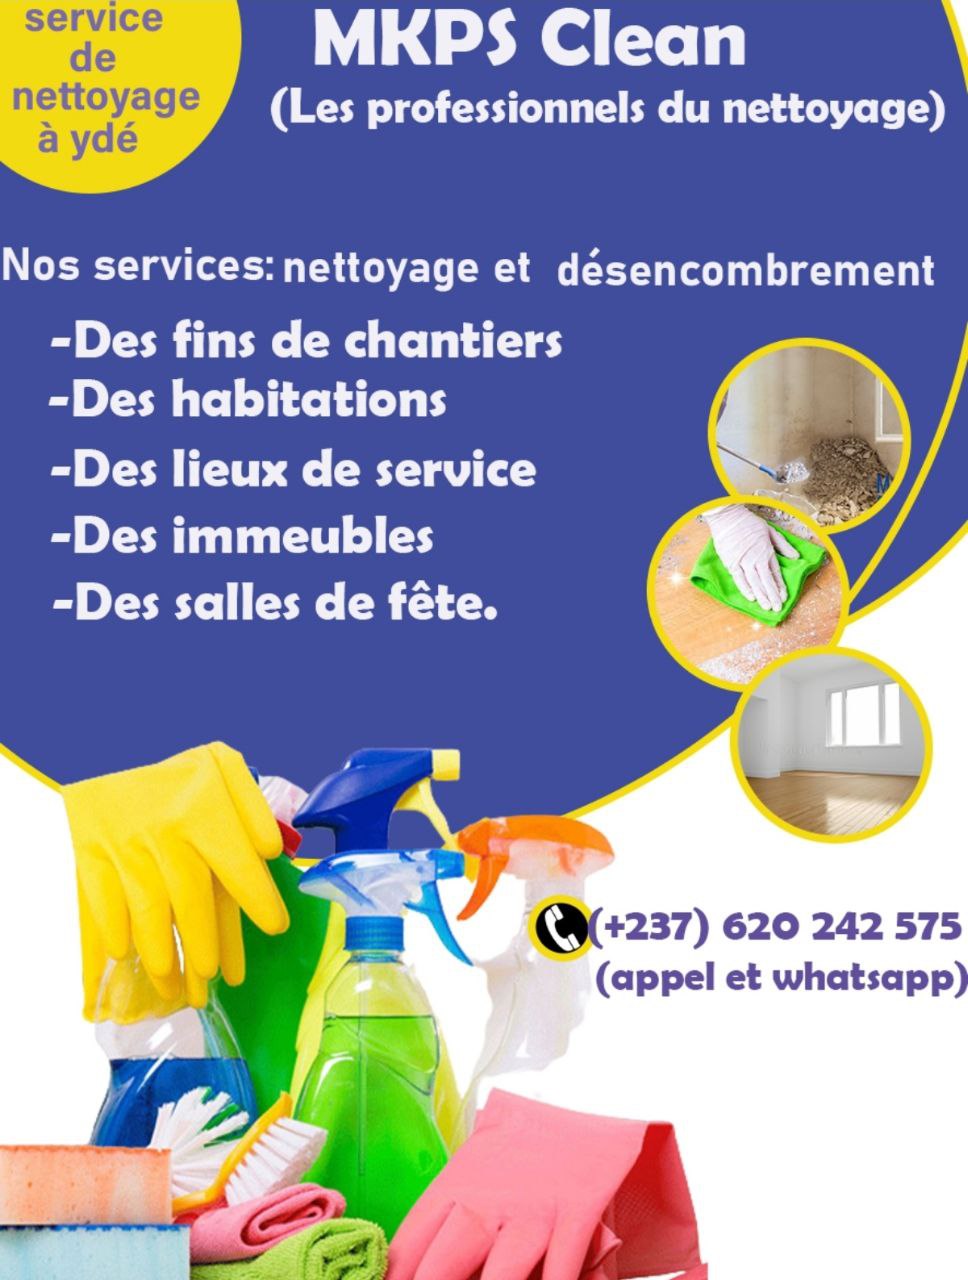 Service de nettoyage et désencombrement - MKPS Clean